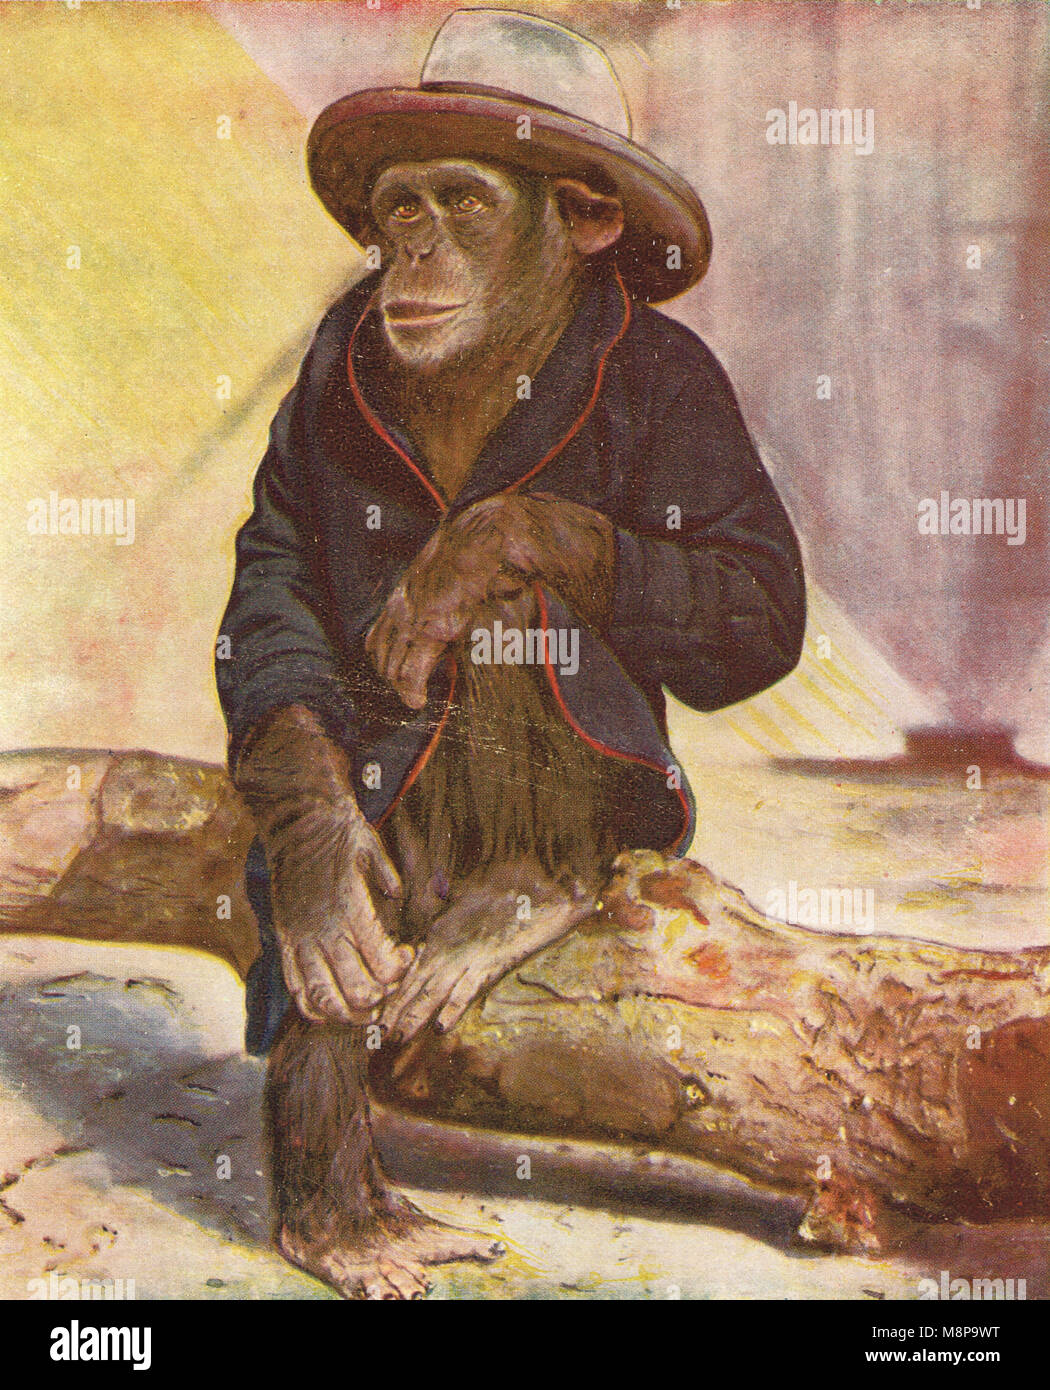 Schimpanse gekleidet wie ein menschliches, trug Hut und Mantel Stockfoto